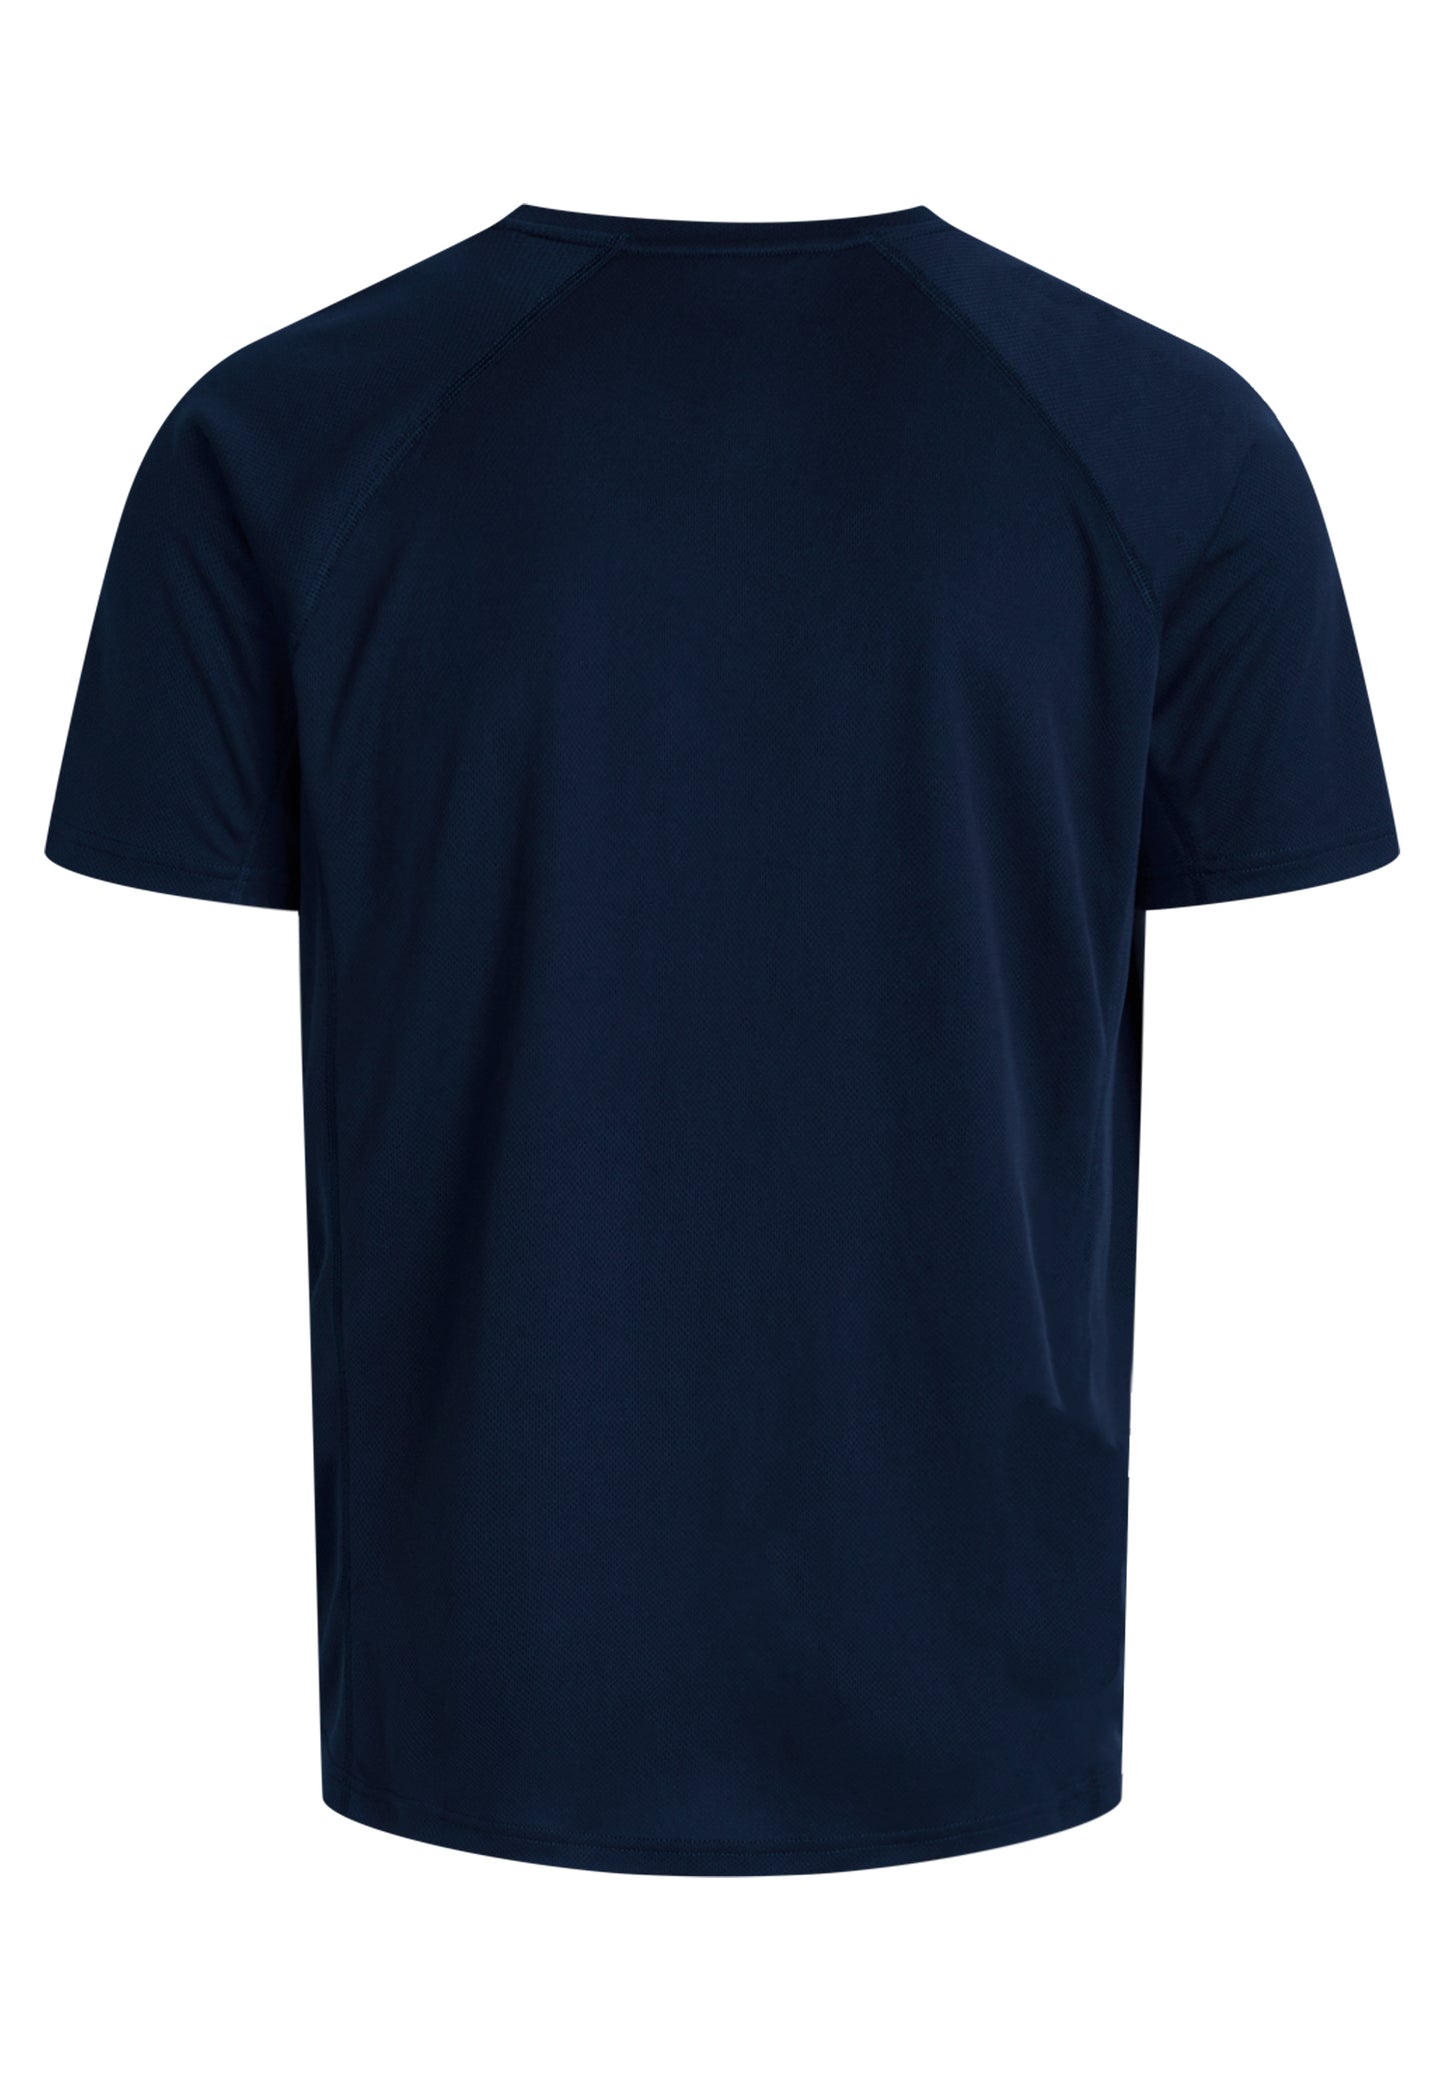 Zebdia Sports t-shirt front print til mænd navy